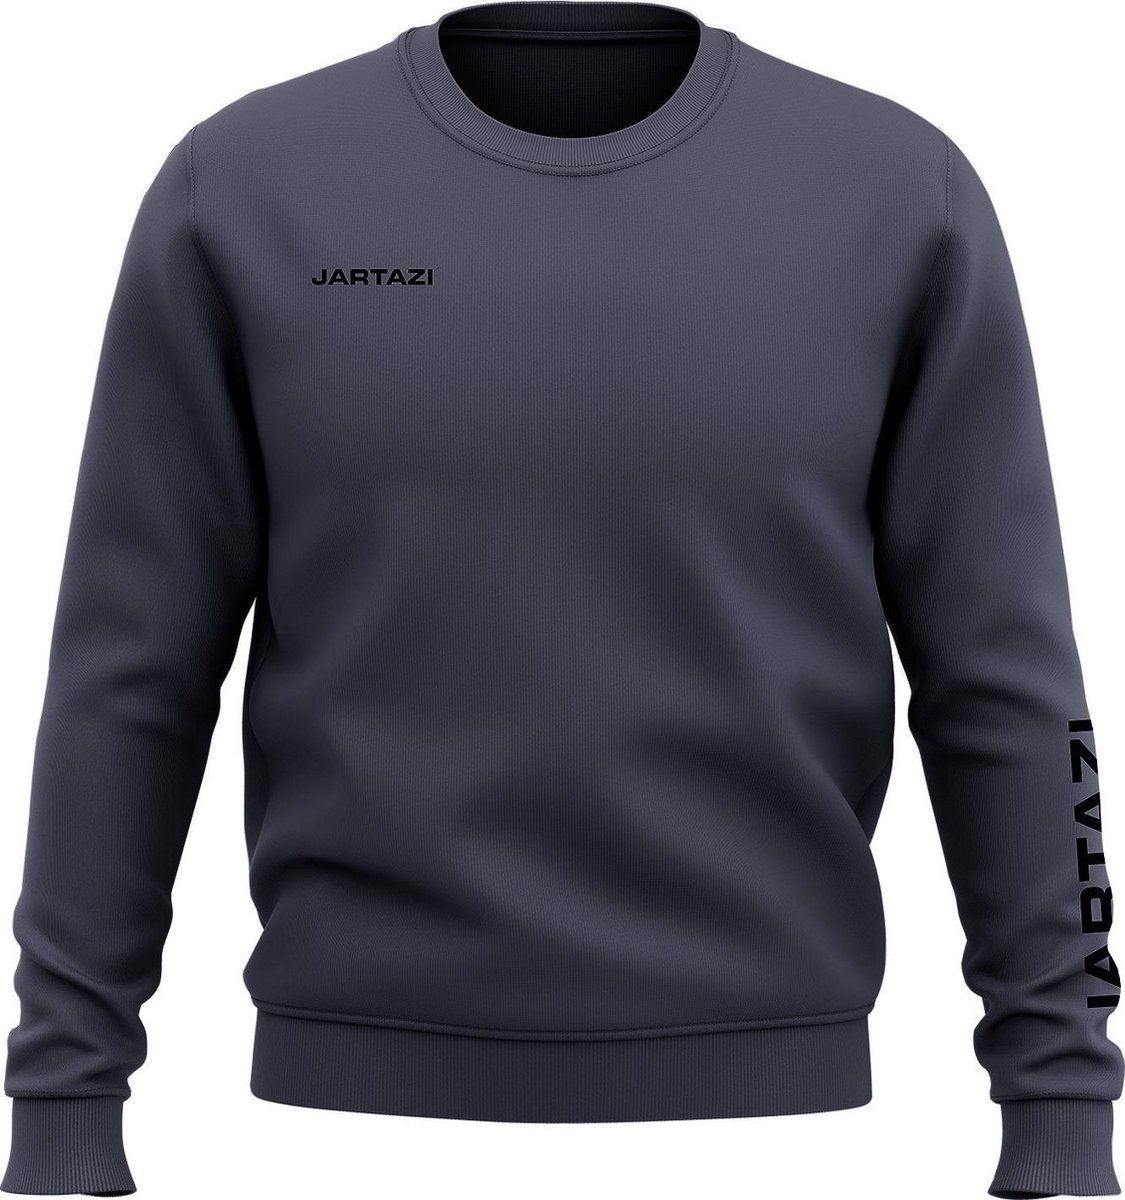 Jartazi Sweater Premium Crewneck Katoen/polyester Blauwgrijs Mt L